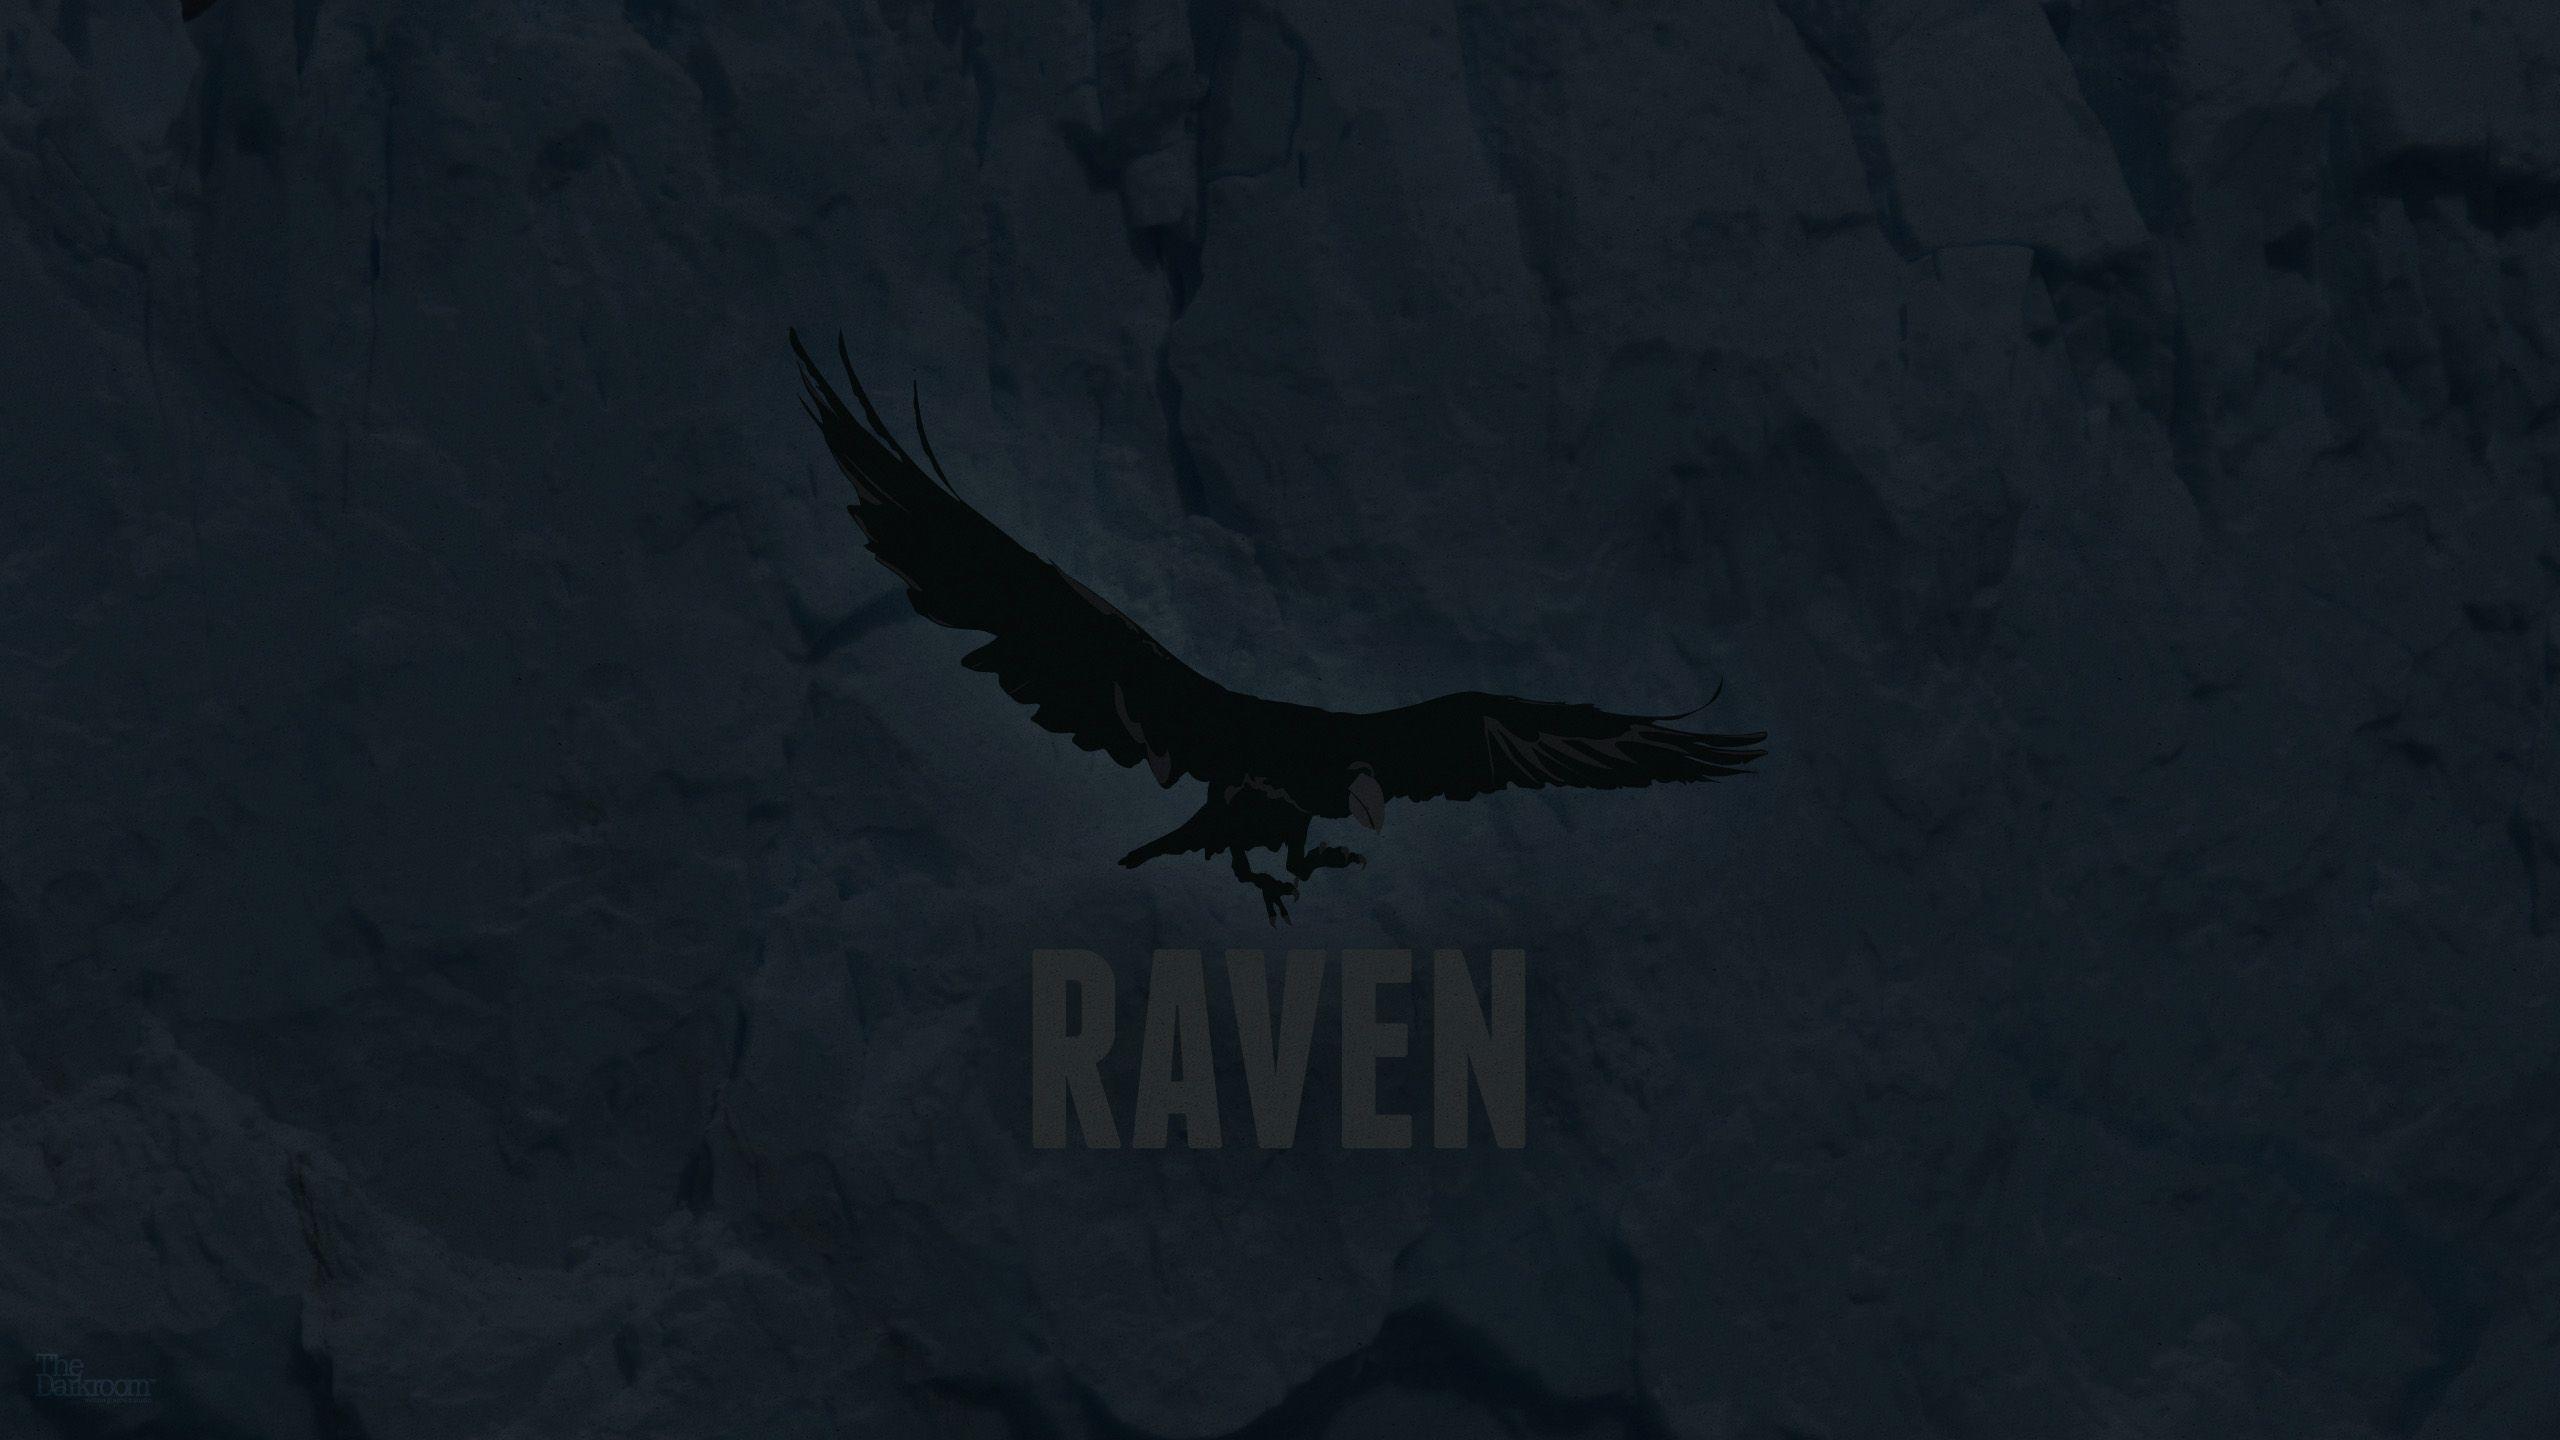 Raven Wallpaper, Raven Wallpaper. Raven Awesome Photo